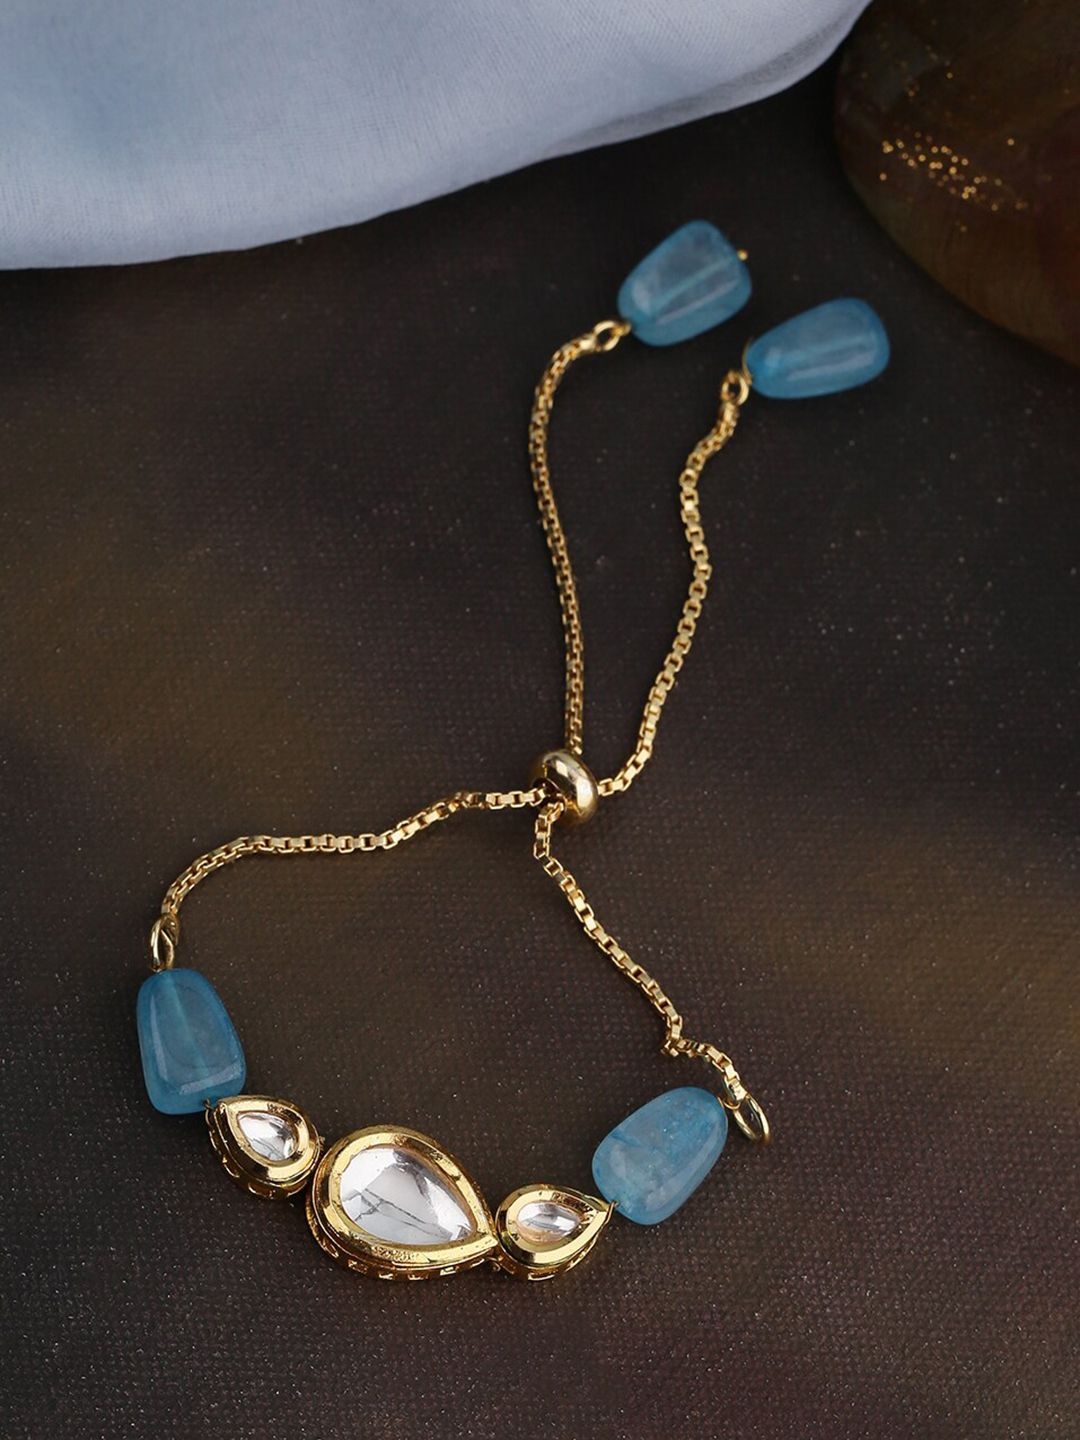 Shoshaa Gold-Toned & Turquoise Blue Gold-Plated Wraparound Bracelet Price in India